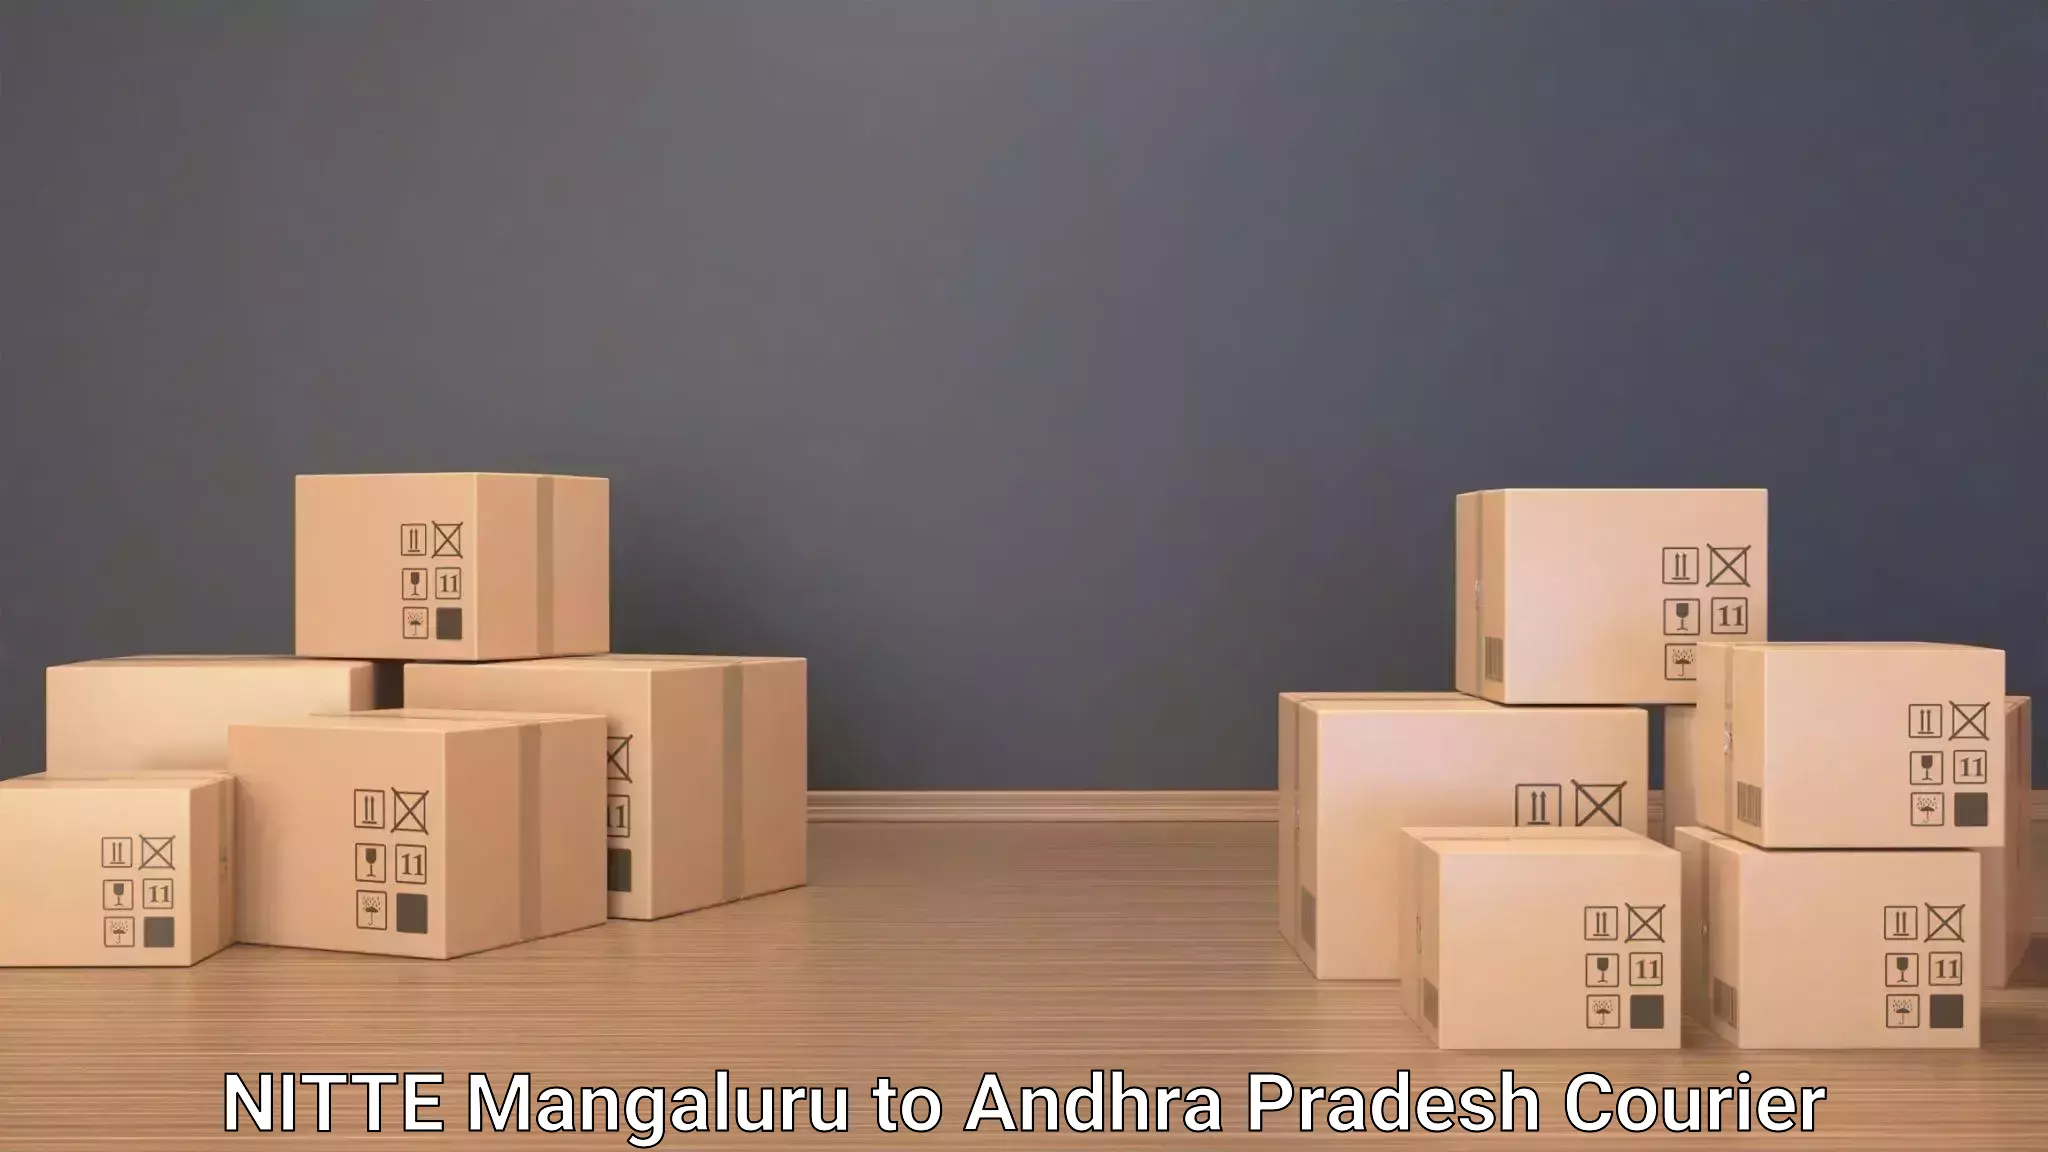 Baggage delivery technology NITTE Mangaluru to Mulakalacheruvu